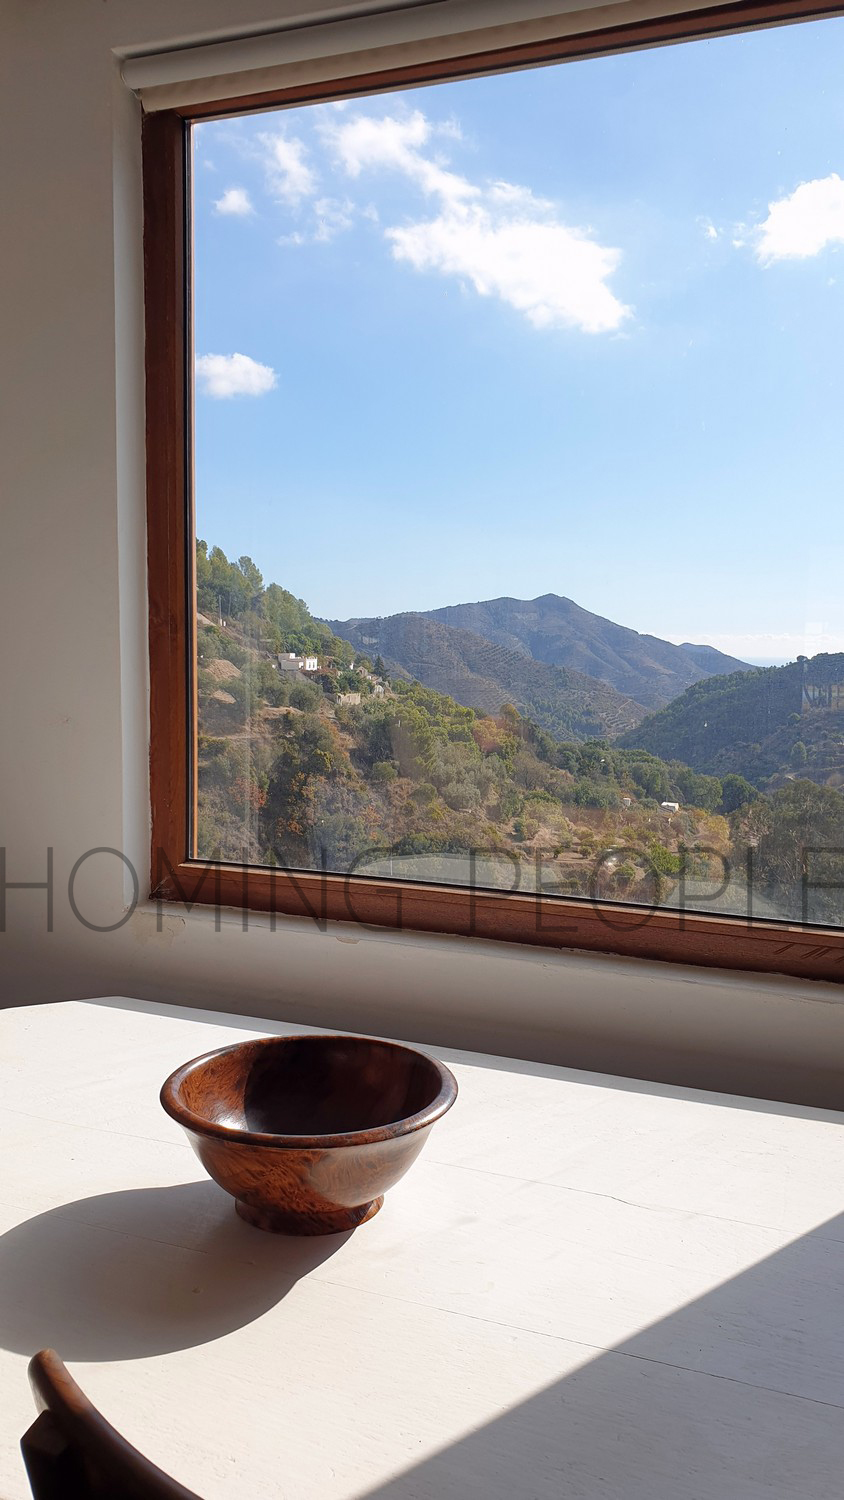 ALQUILADO: Un cortijo encantador con vistas panorámicas a la montaña